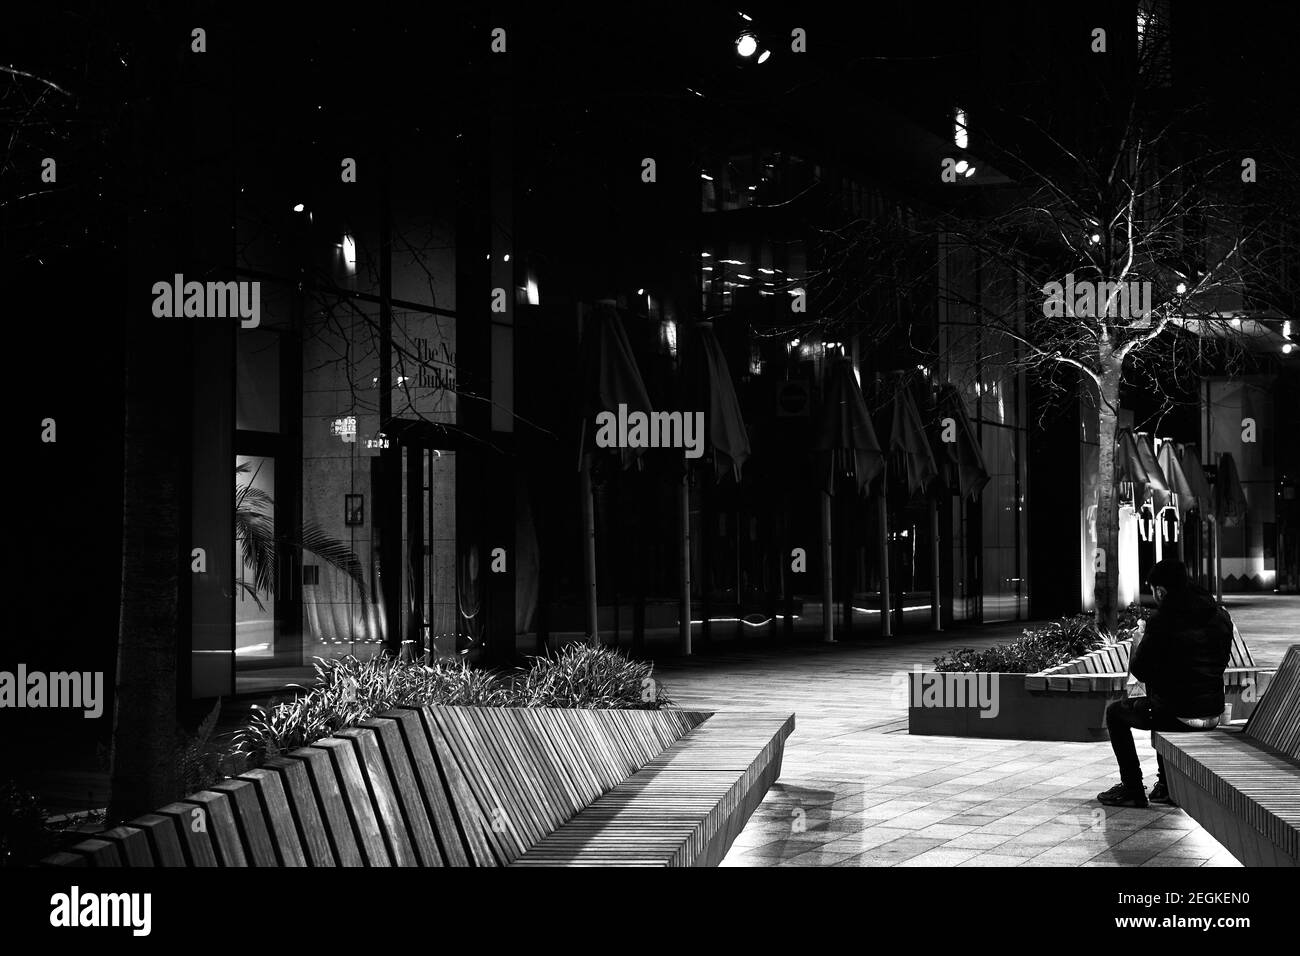 LondonUK - 17 Feb 2021: Immagine monocromatica in bianco e nero dell'uomo mentre mangiava seduto in panchina in una moderna strada urbana contemporanea di notte Foto Stock